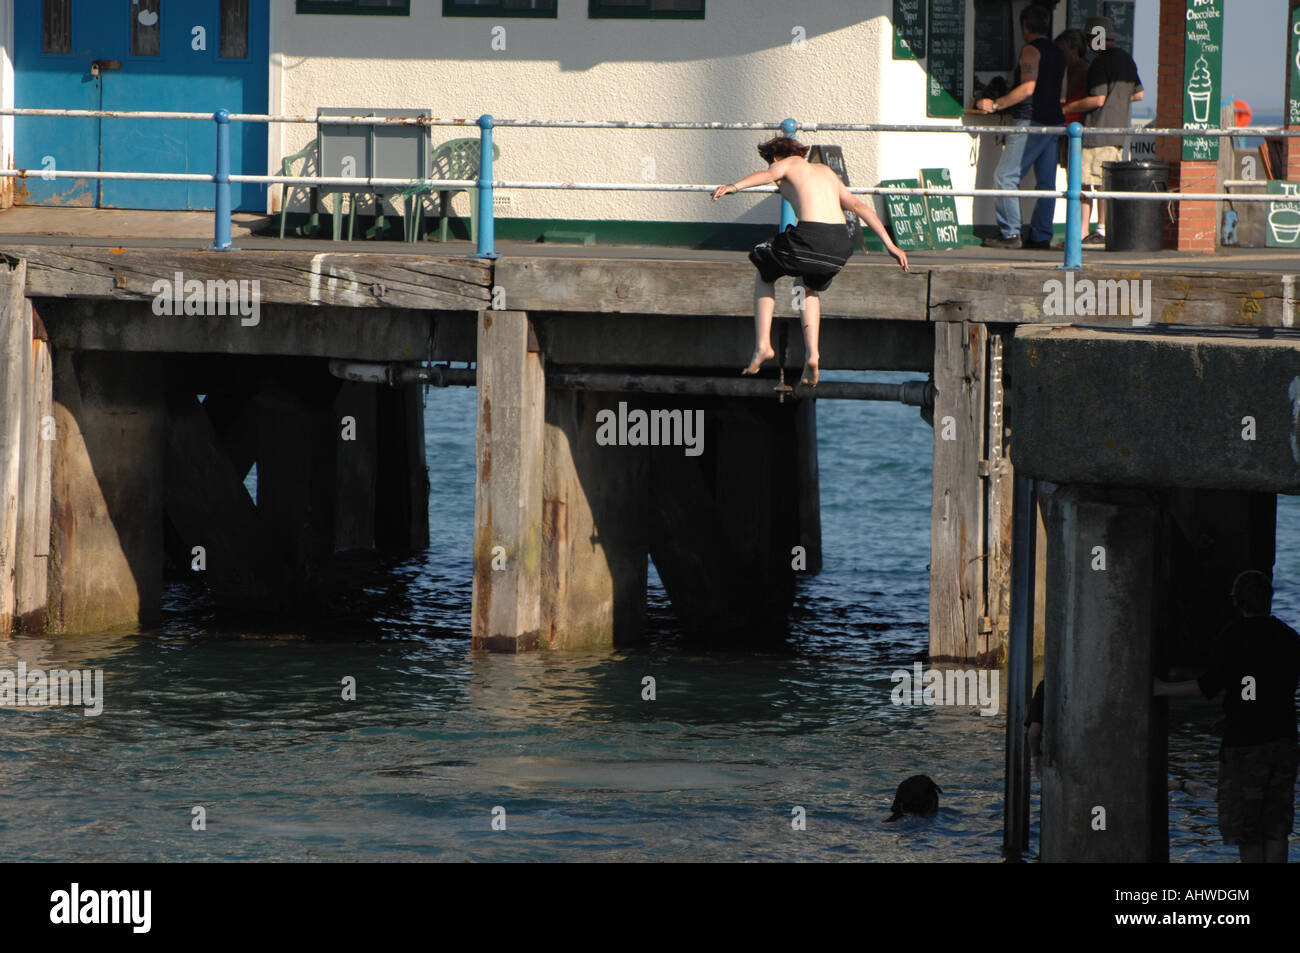 Un garçon bondit dans la mer depuis le mur du port de Weymouth, Dorset, au Royaume-Uni - une folie meurtrière connue sous le nom de "désactivation". Banque D'Images